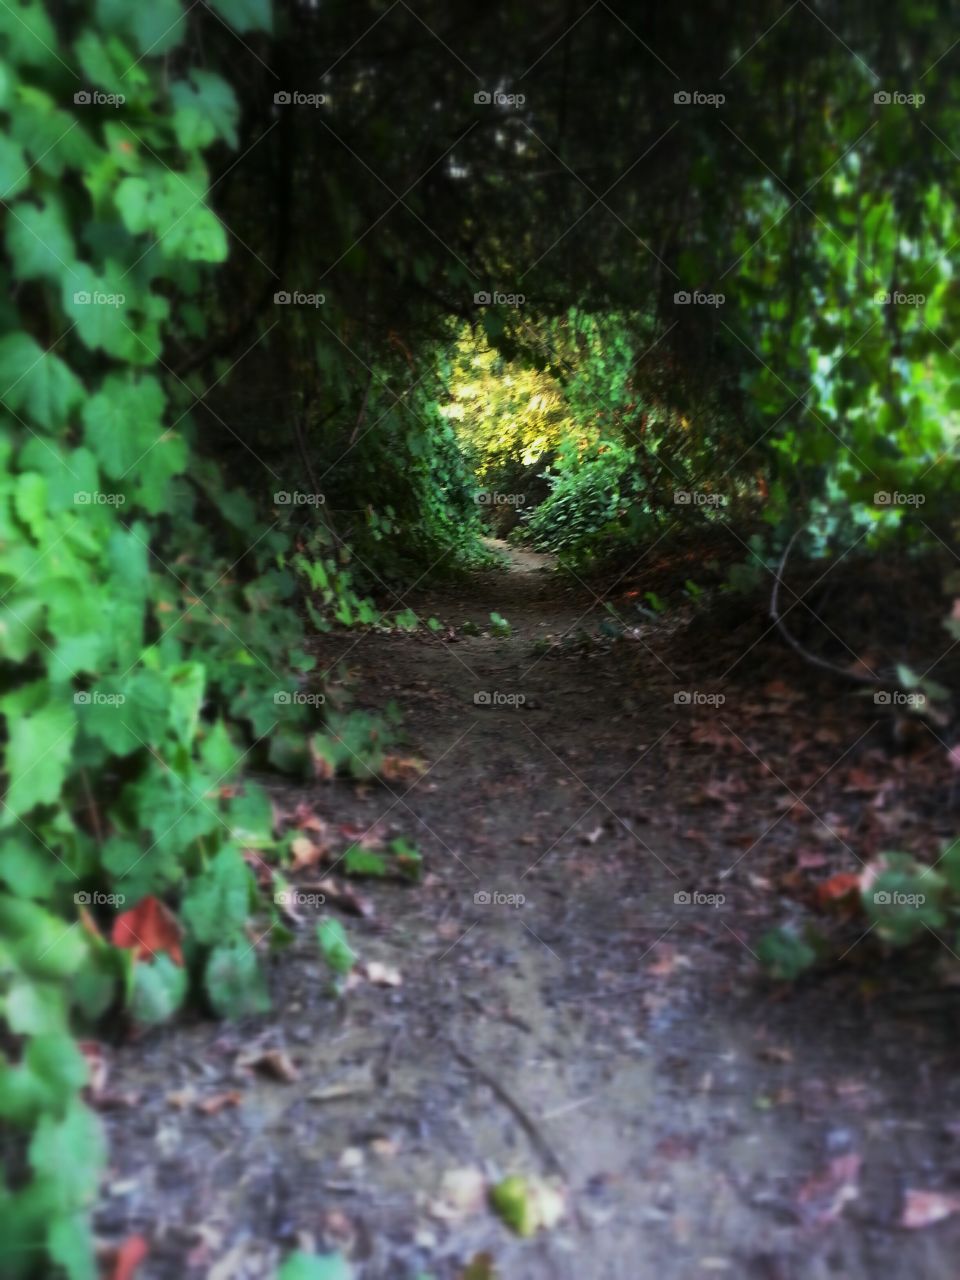 hidden tunnel of vines